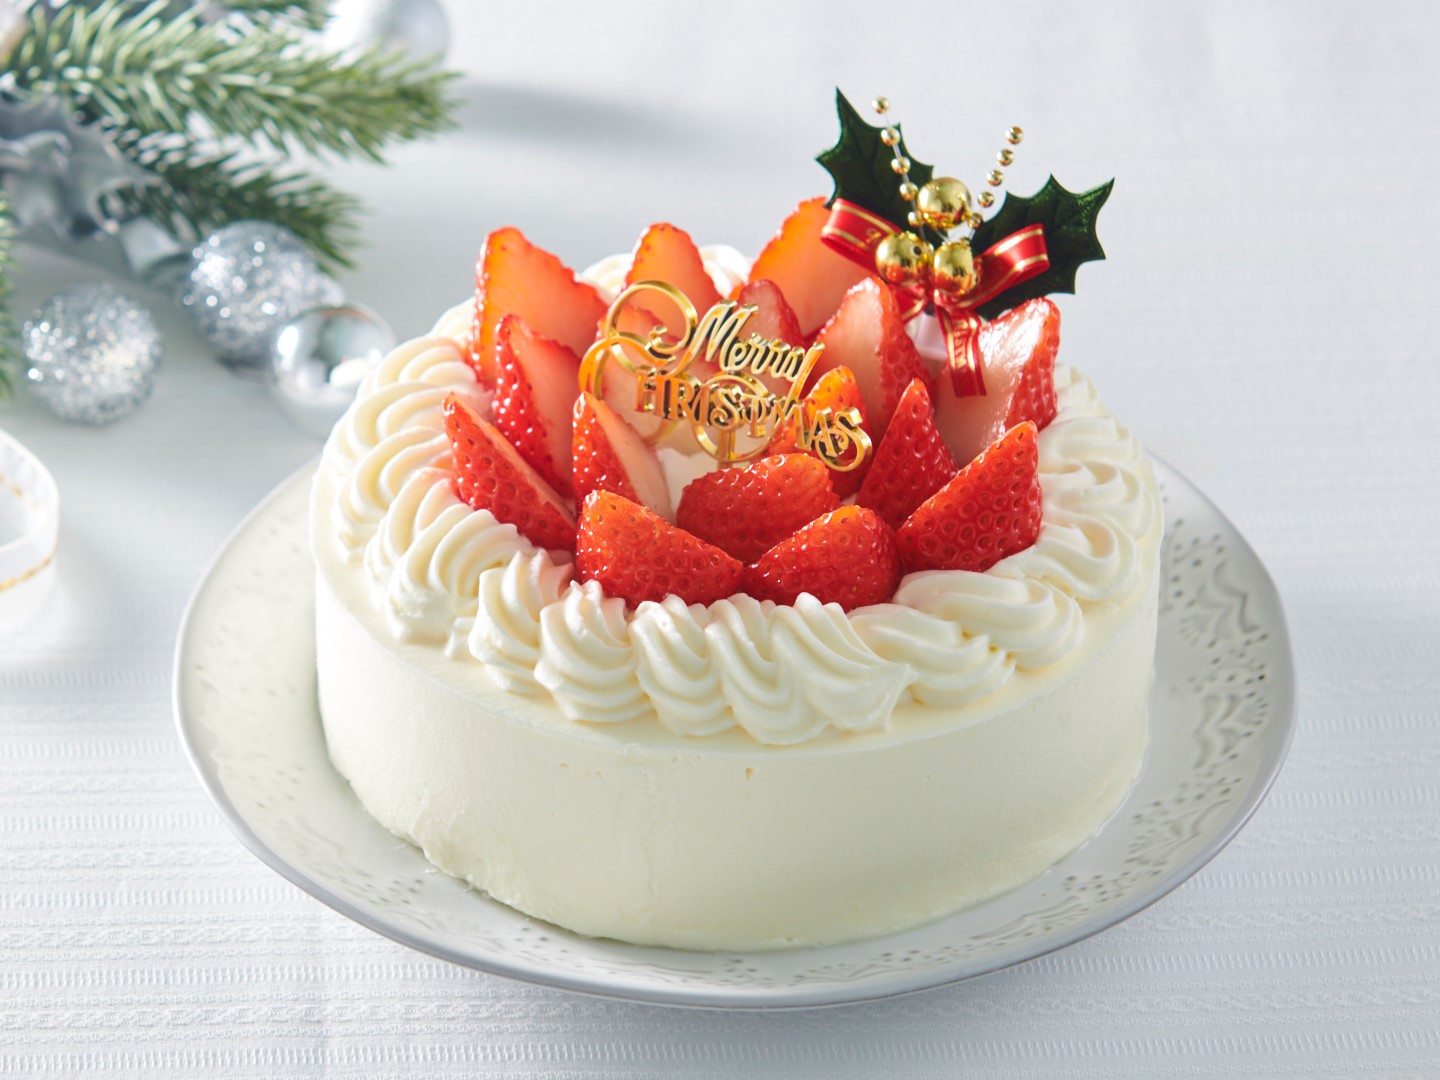 クリスマスケーキもカロリーハーフ 糖質70 カット 我慢しないでおいしいクリスマスを シャトレーゼ公式ブログ